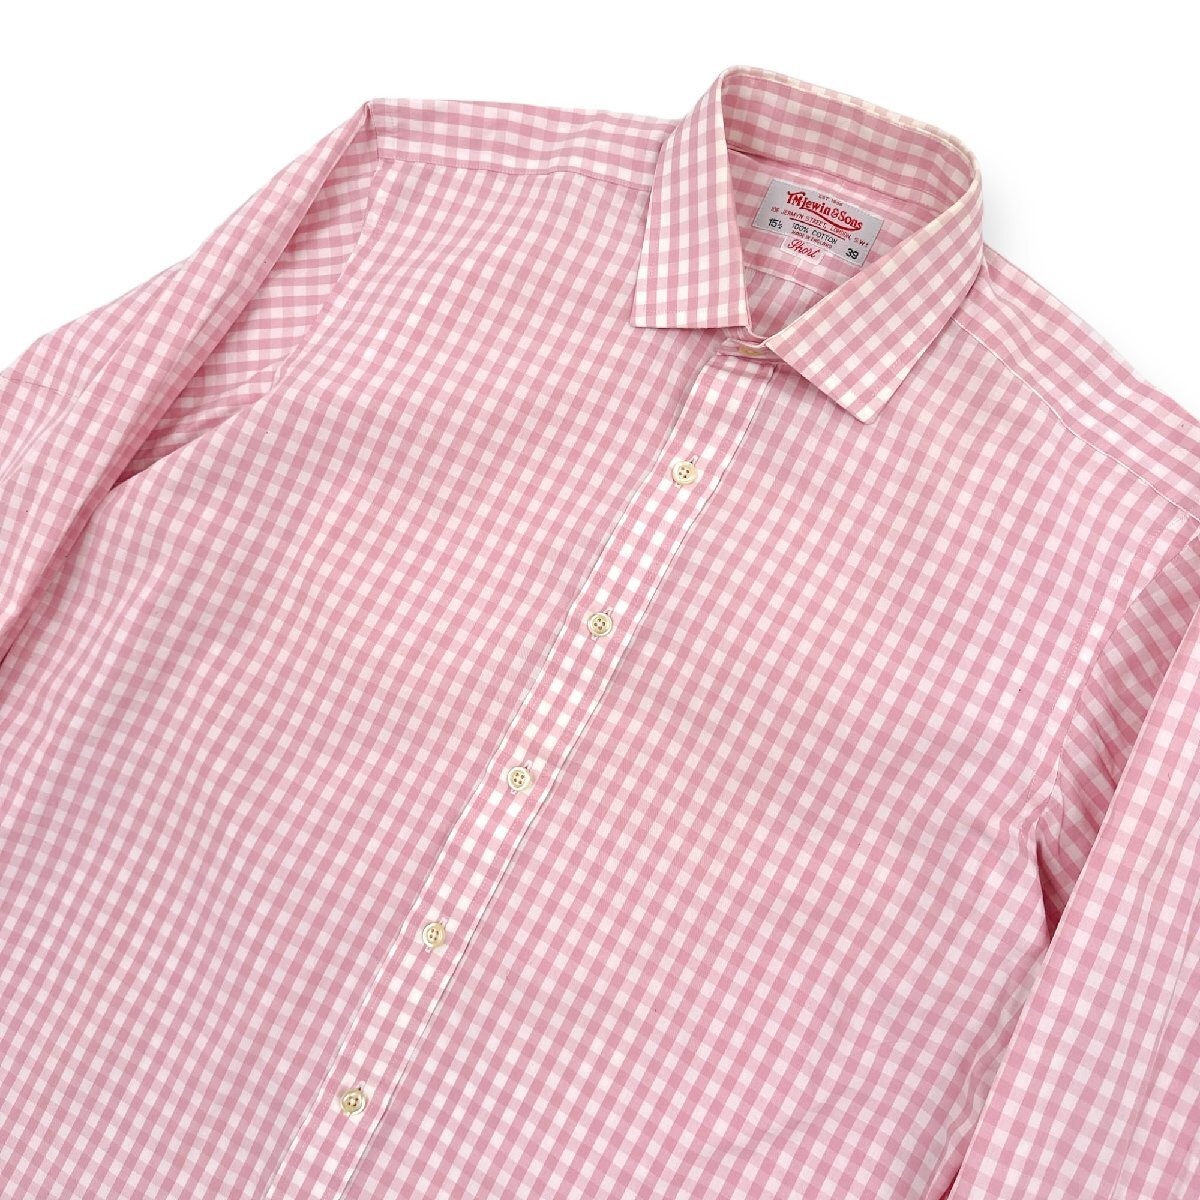 英国製◆T.M.Lewin&Sons ダブルカフス ギンガムチェック ワイシャツ ドレスシャツ 15 1/2 39 ピンク×白 イングランド製_画像2